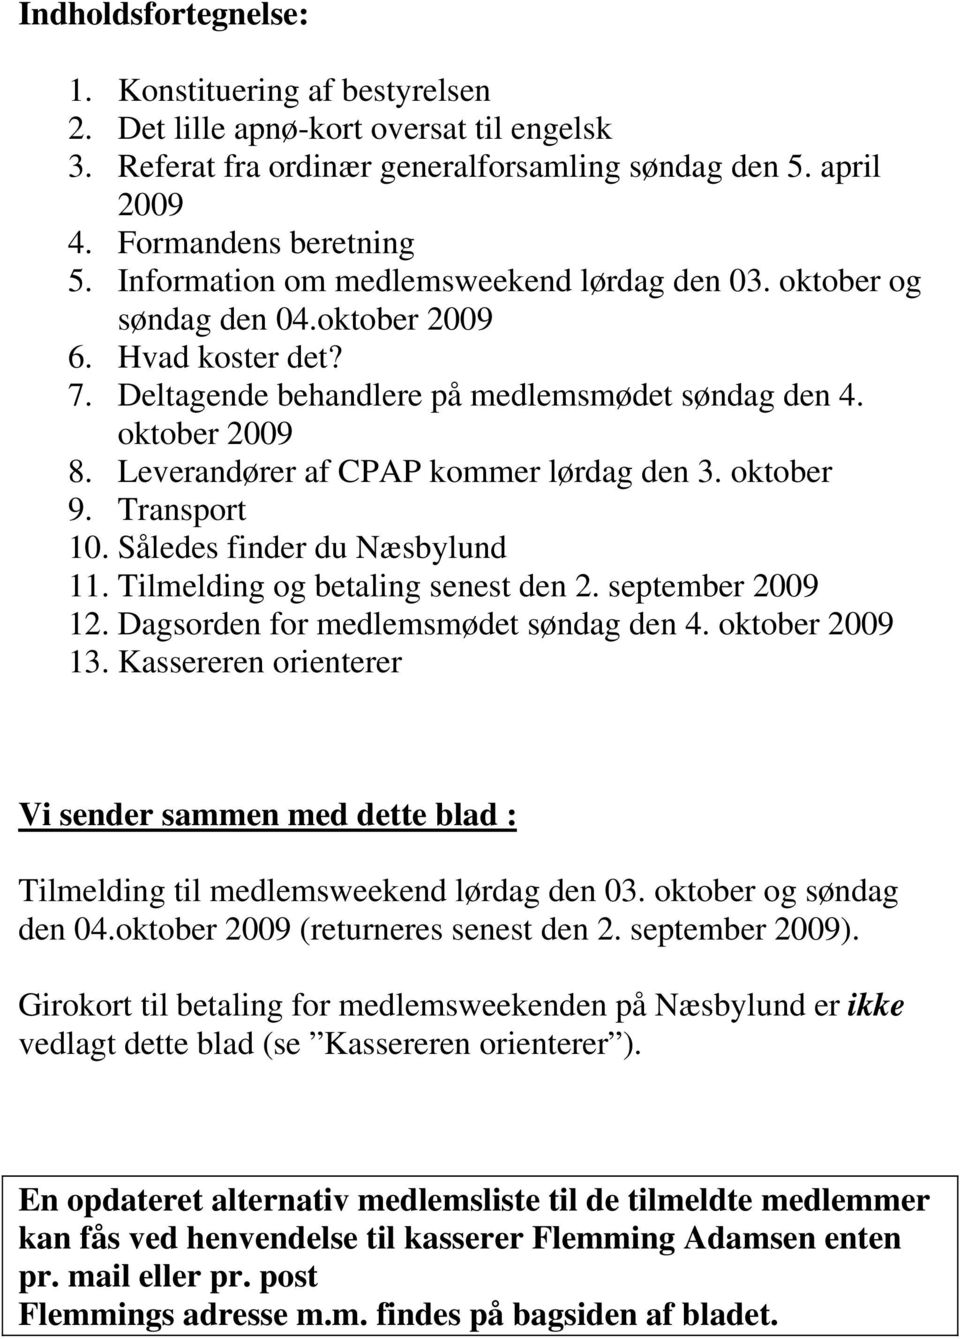 Leverandører af CPAP kommer lørdag den 3. oktober 9. Transport 10. Således finder du Næsbylund 11. Tilmelding og betaling senest den 2. september 2009 12. Dagsorden for medlemsmødet søndag den 4.